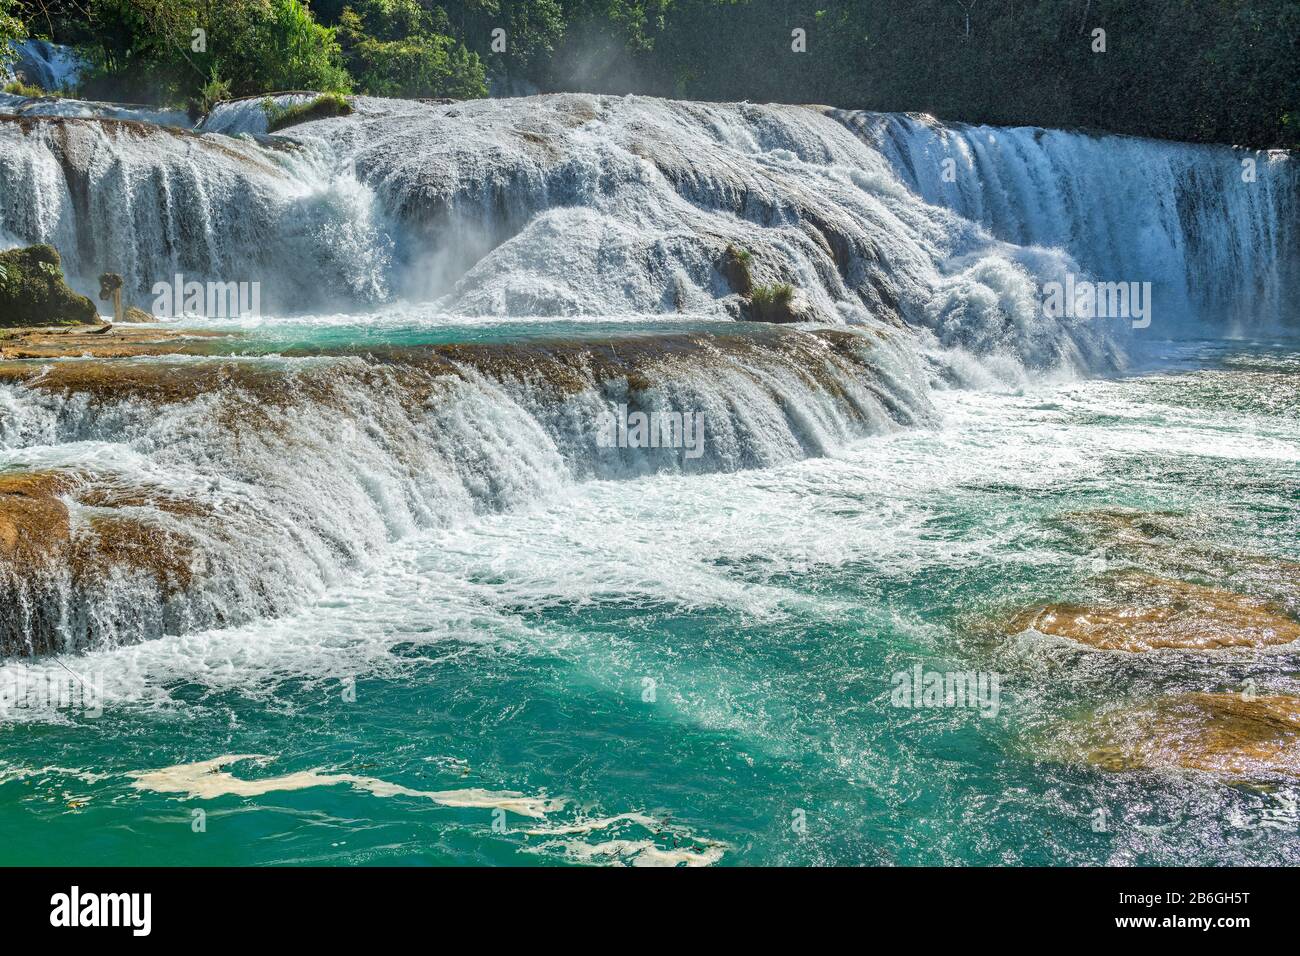 Las aguas turquesas de agua Azul fluyen con fuerza creando mucho aerosol en el aire en la selva tropical de Chiapas cerca de Palenque, México. Foto de stock